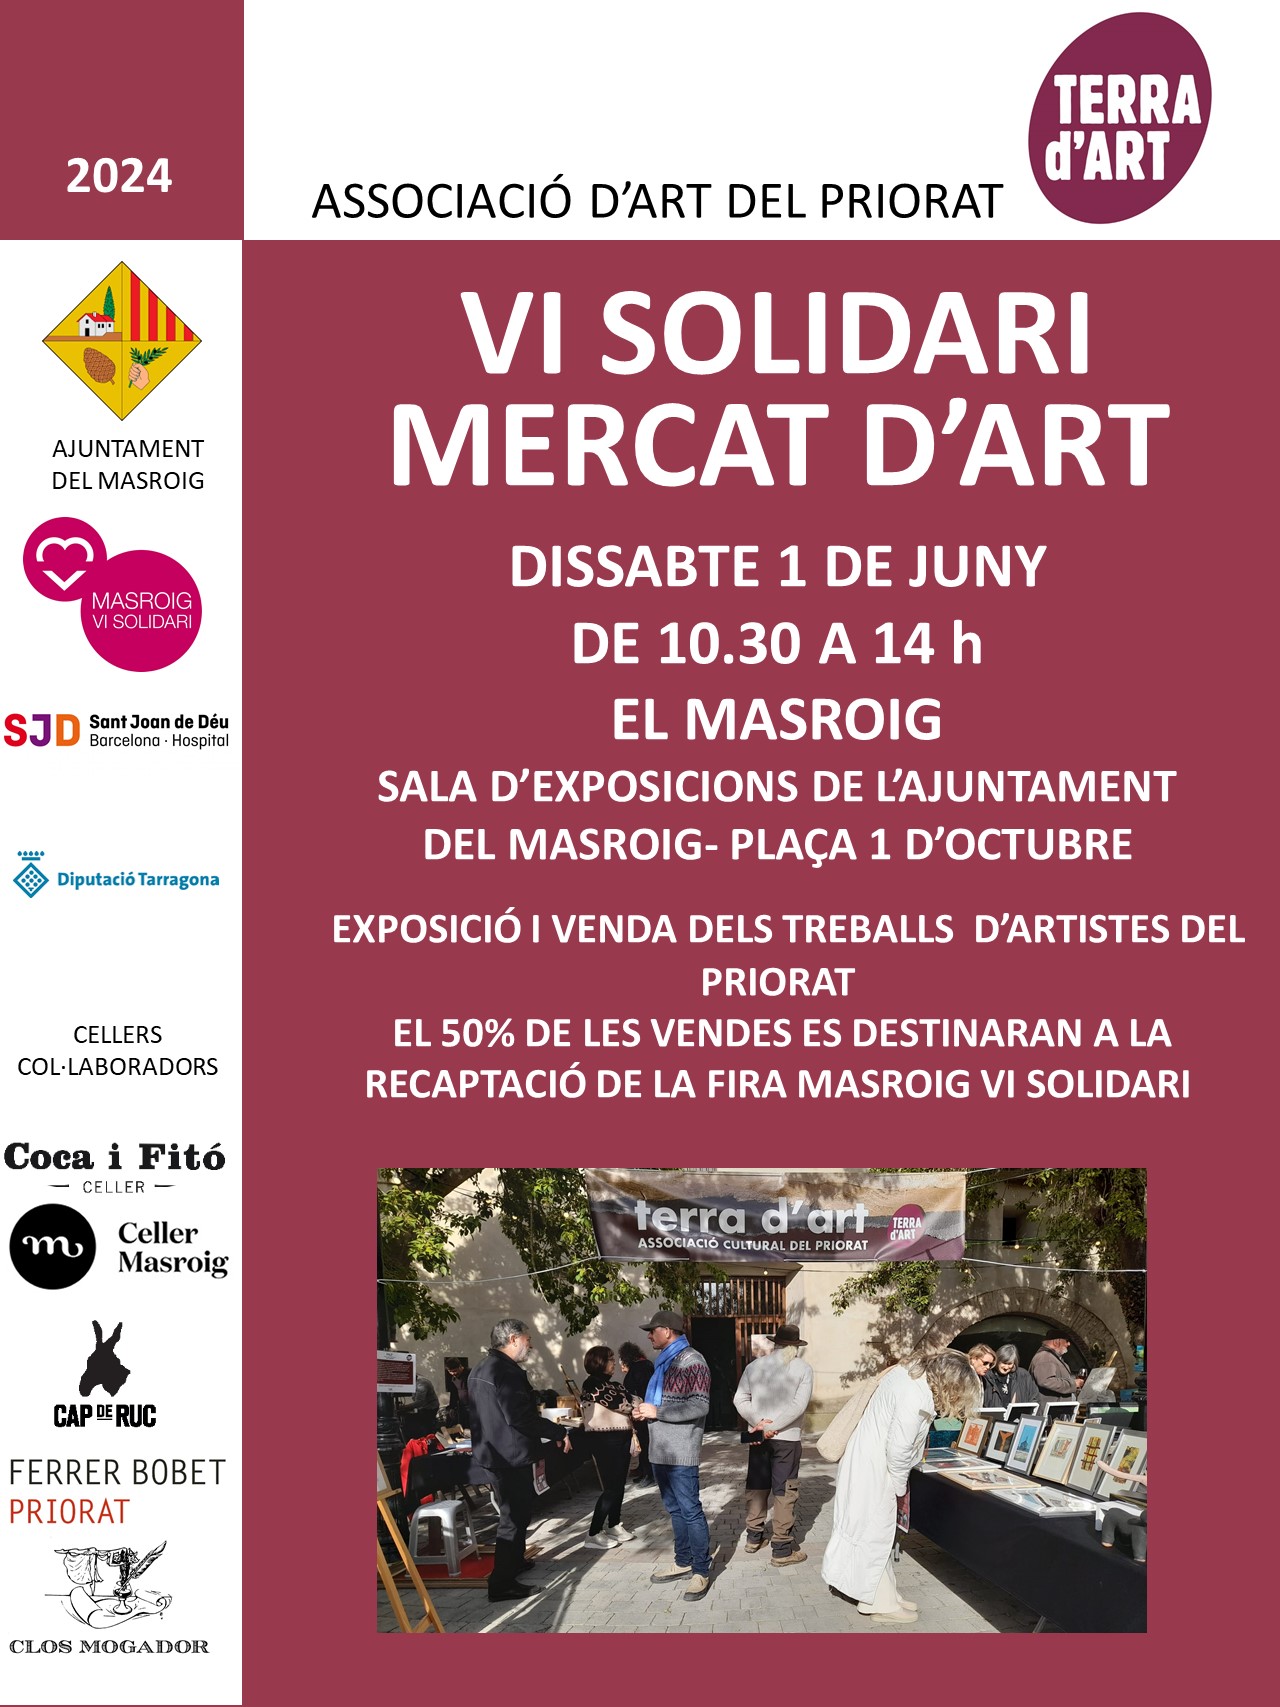 MERCAT d'ART en la jornada del Vi Solidari del Masroig